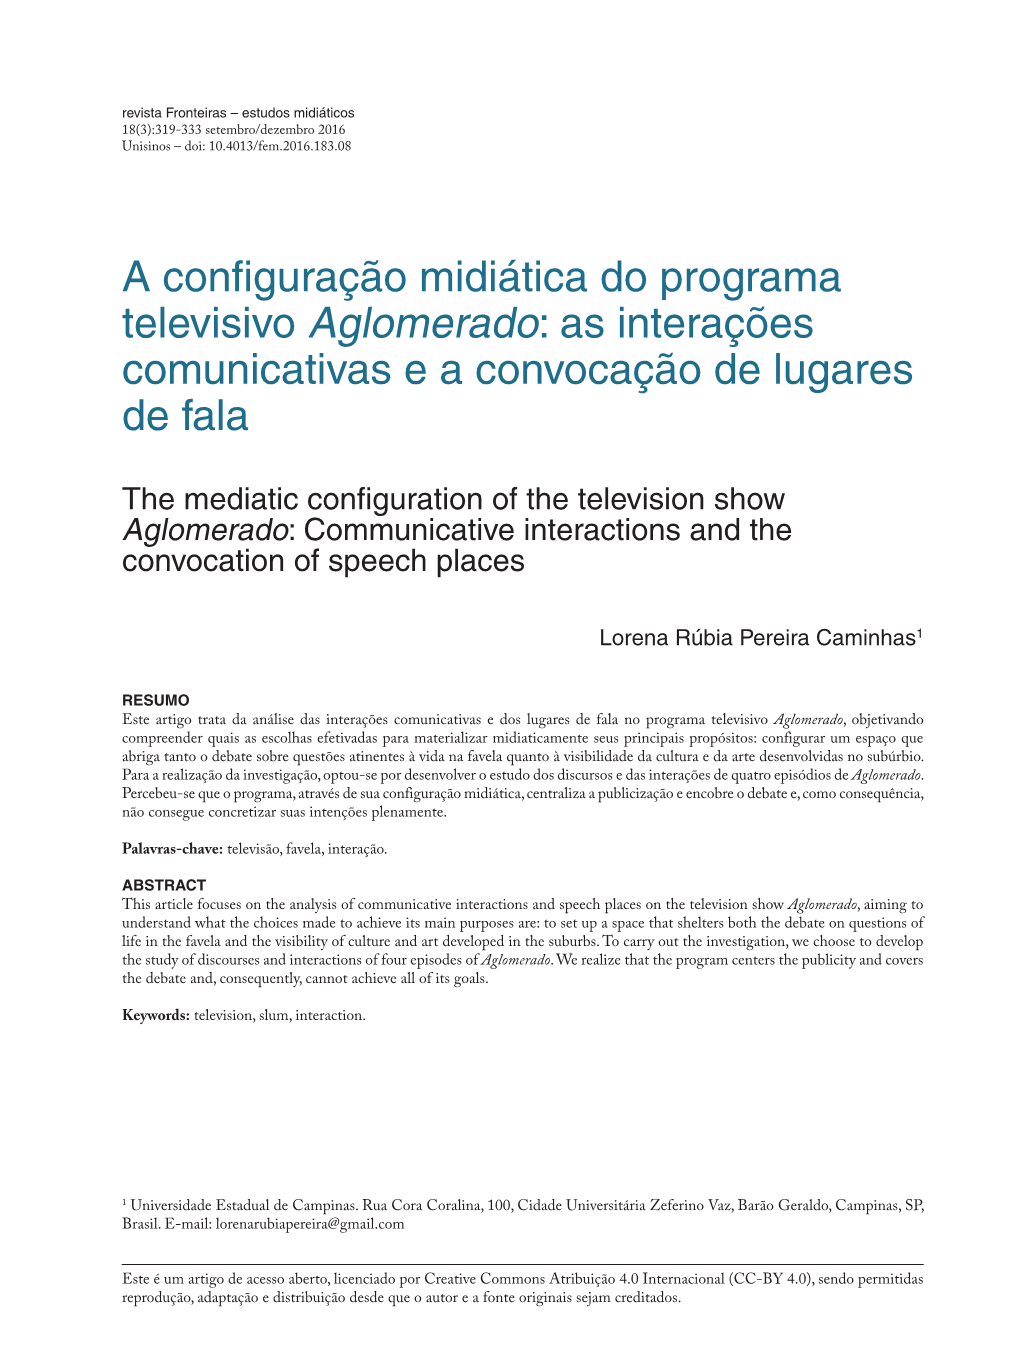 A Configuração Midiática Do Programa Televisivo Aglomerado: As Interações Comunicativas E a Convocação De Lugares De Fala